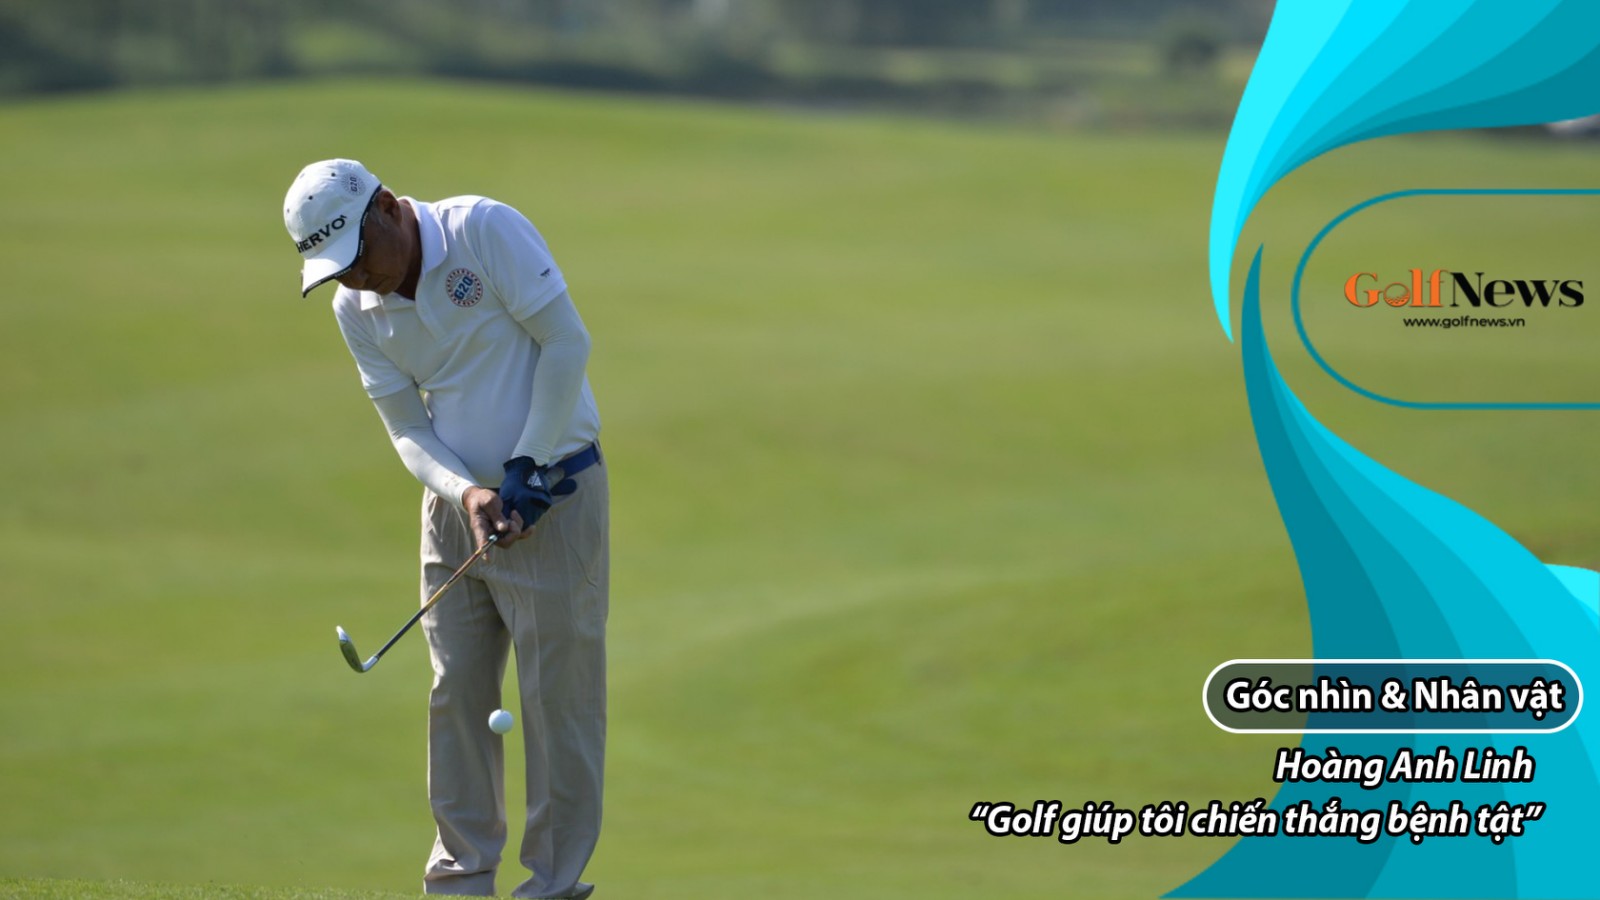 Golfer Hoàng Anh Linh – Golf giúp tôi chiến thắng bệnh tật